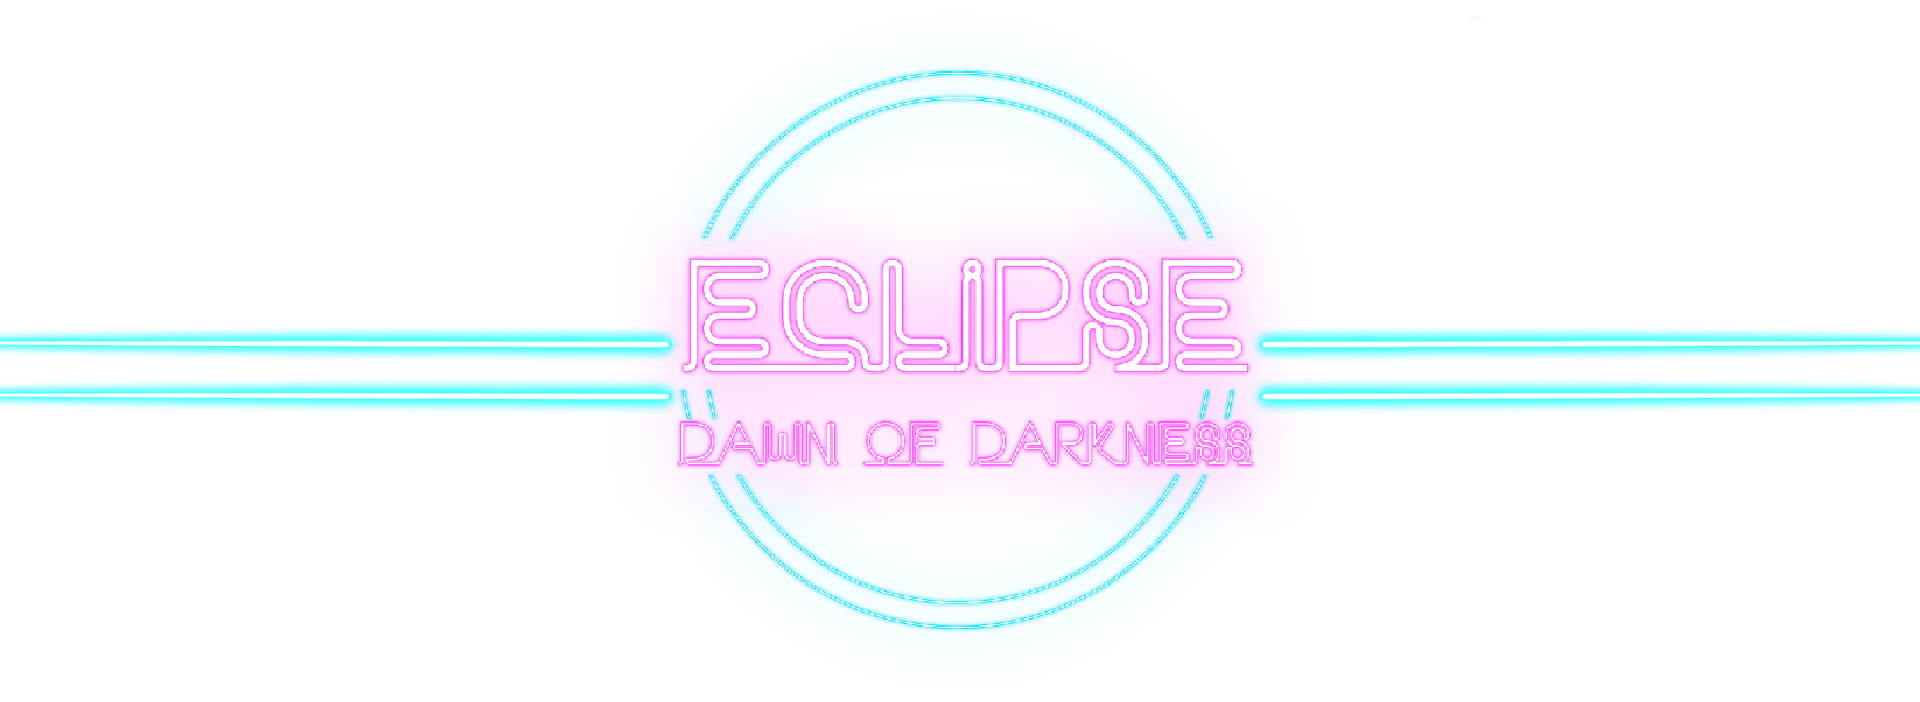 Eclipse: Dawn of Darkness